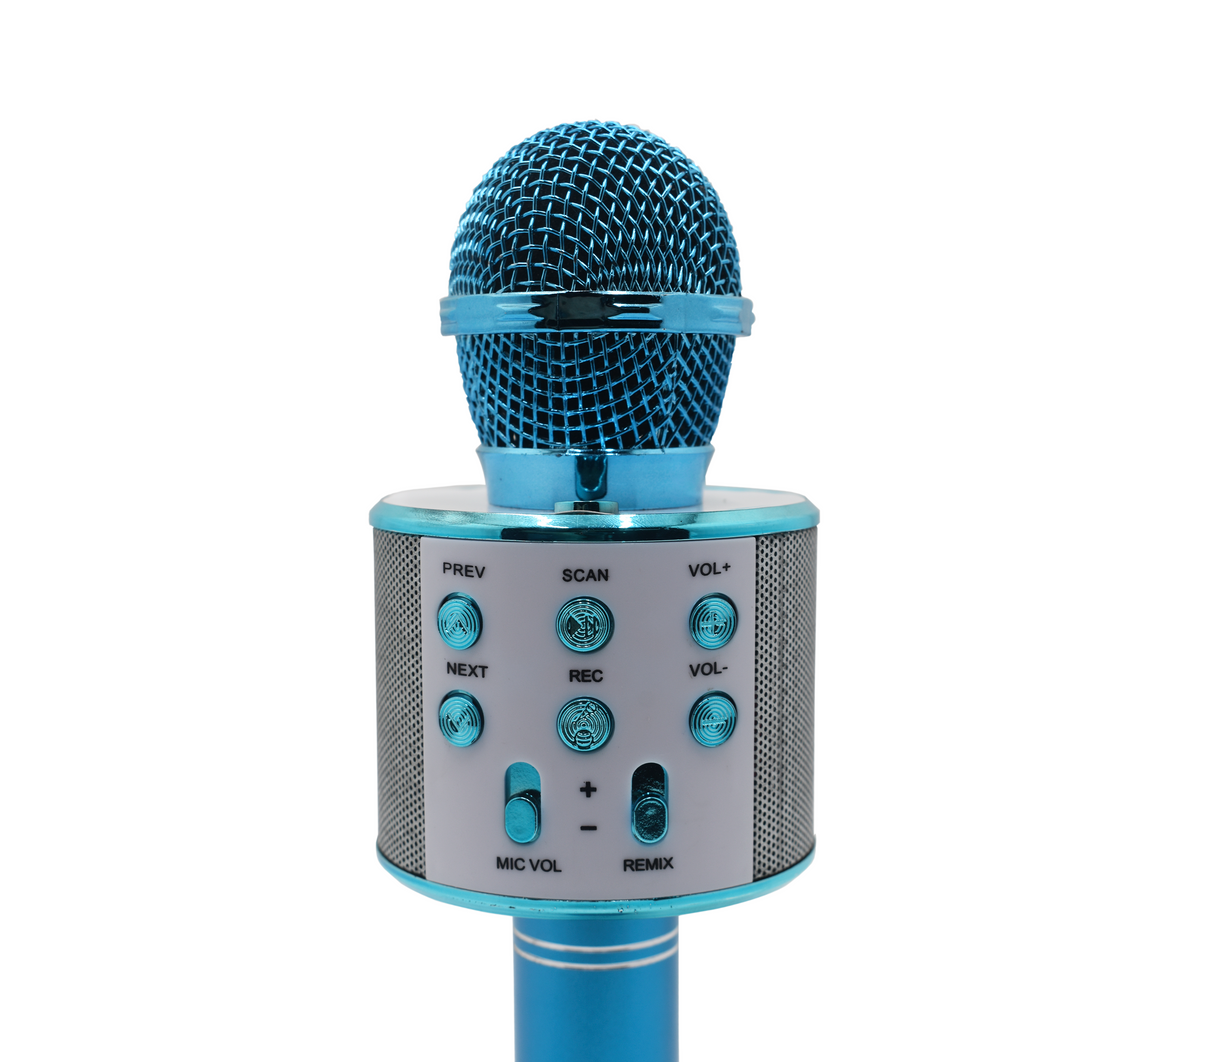 Microfono Inalambrico Colorido Blue GENERICO